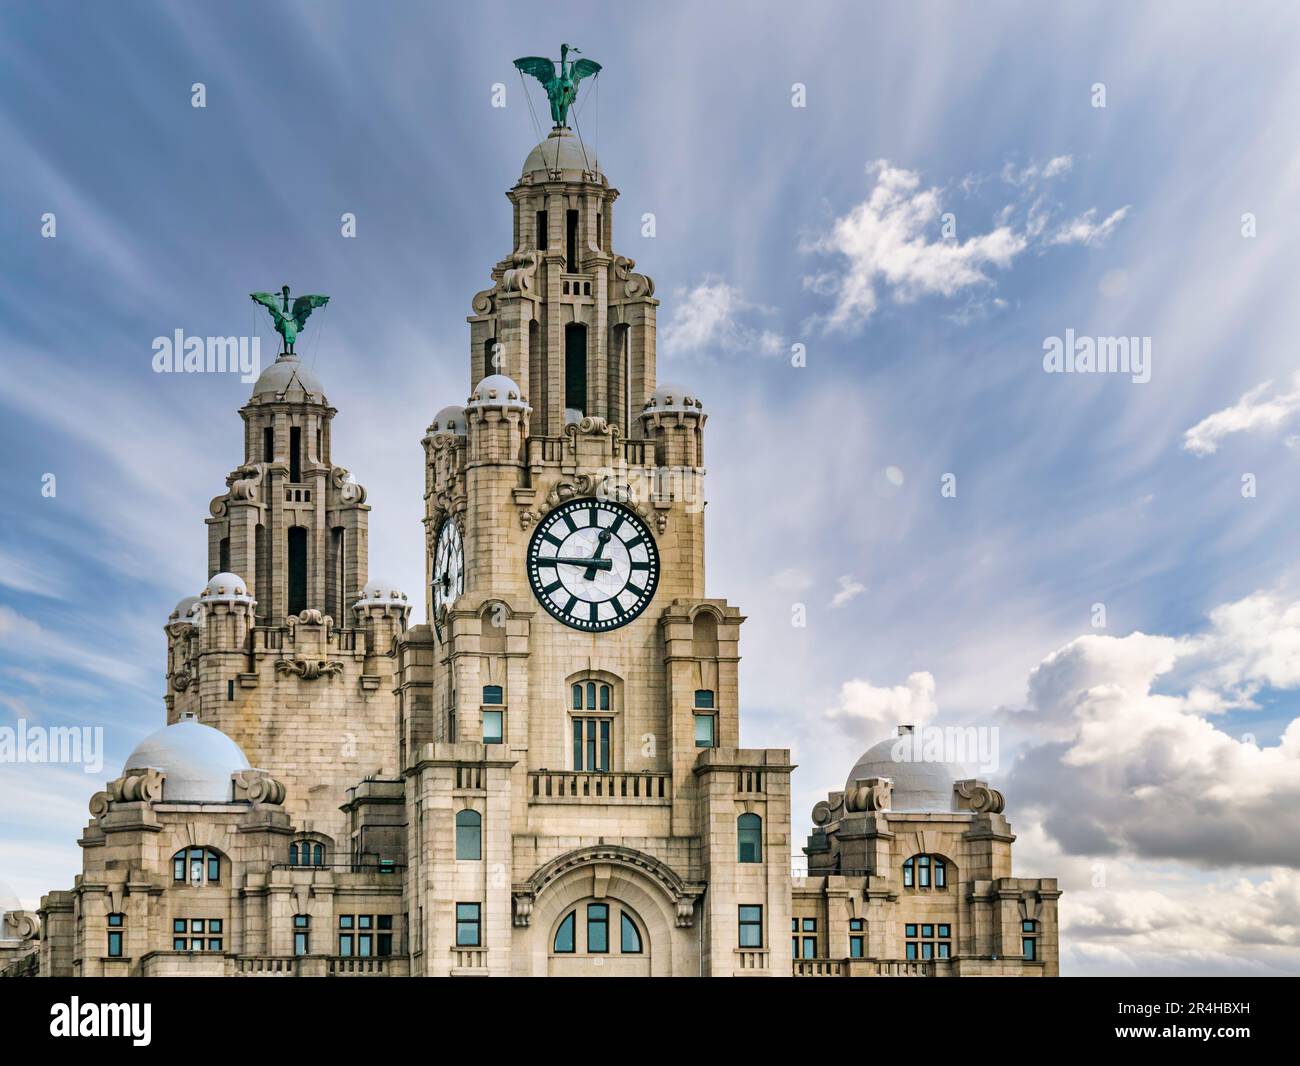 Ammira da vicino le torri dell'orologio dell'edificio Royal Liver con cormorant Liver Birds e gli orologi più grandi del Regno Unito, Pier Head, Liverpool, Inghilterra, Regno Unito Foto Stock